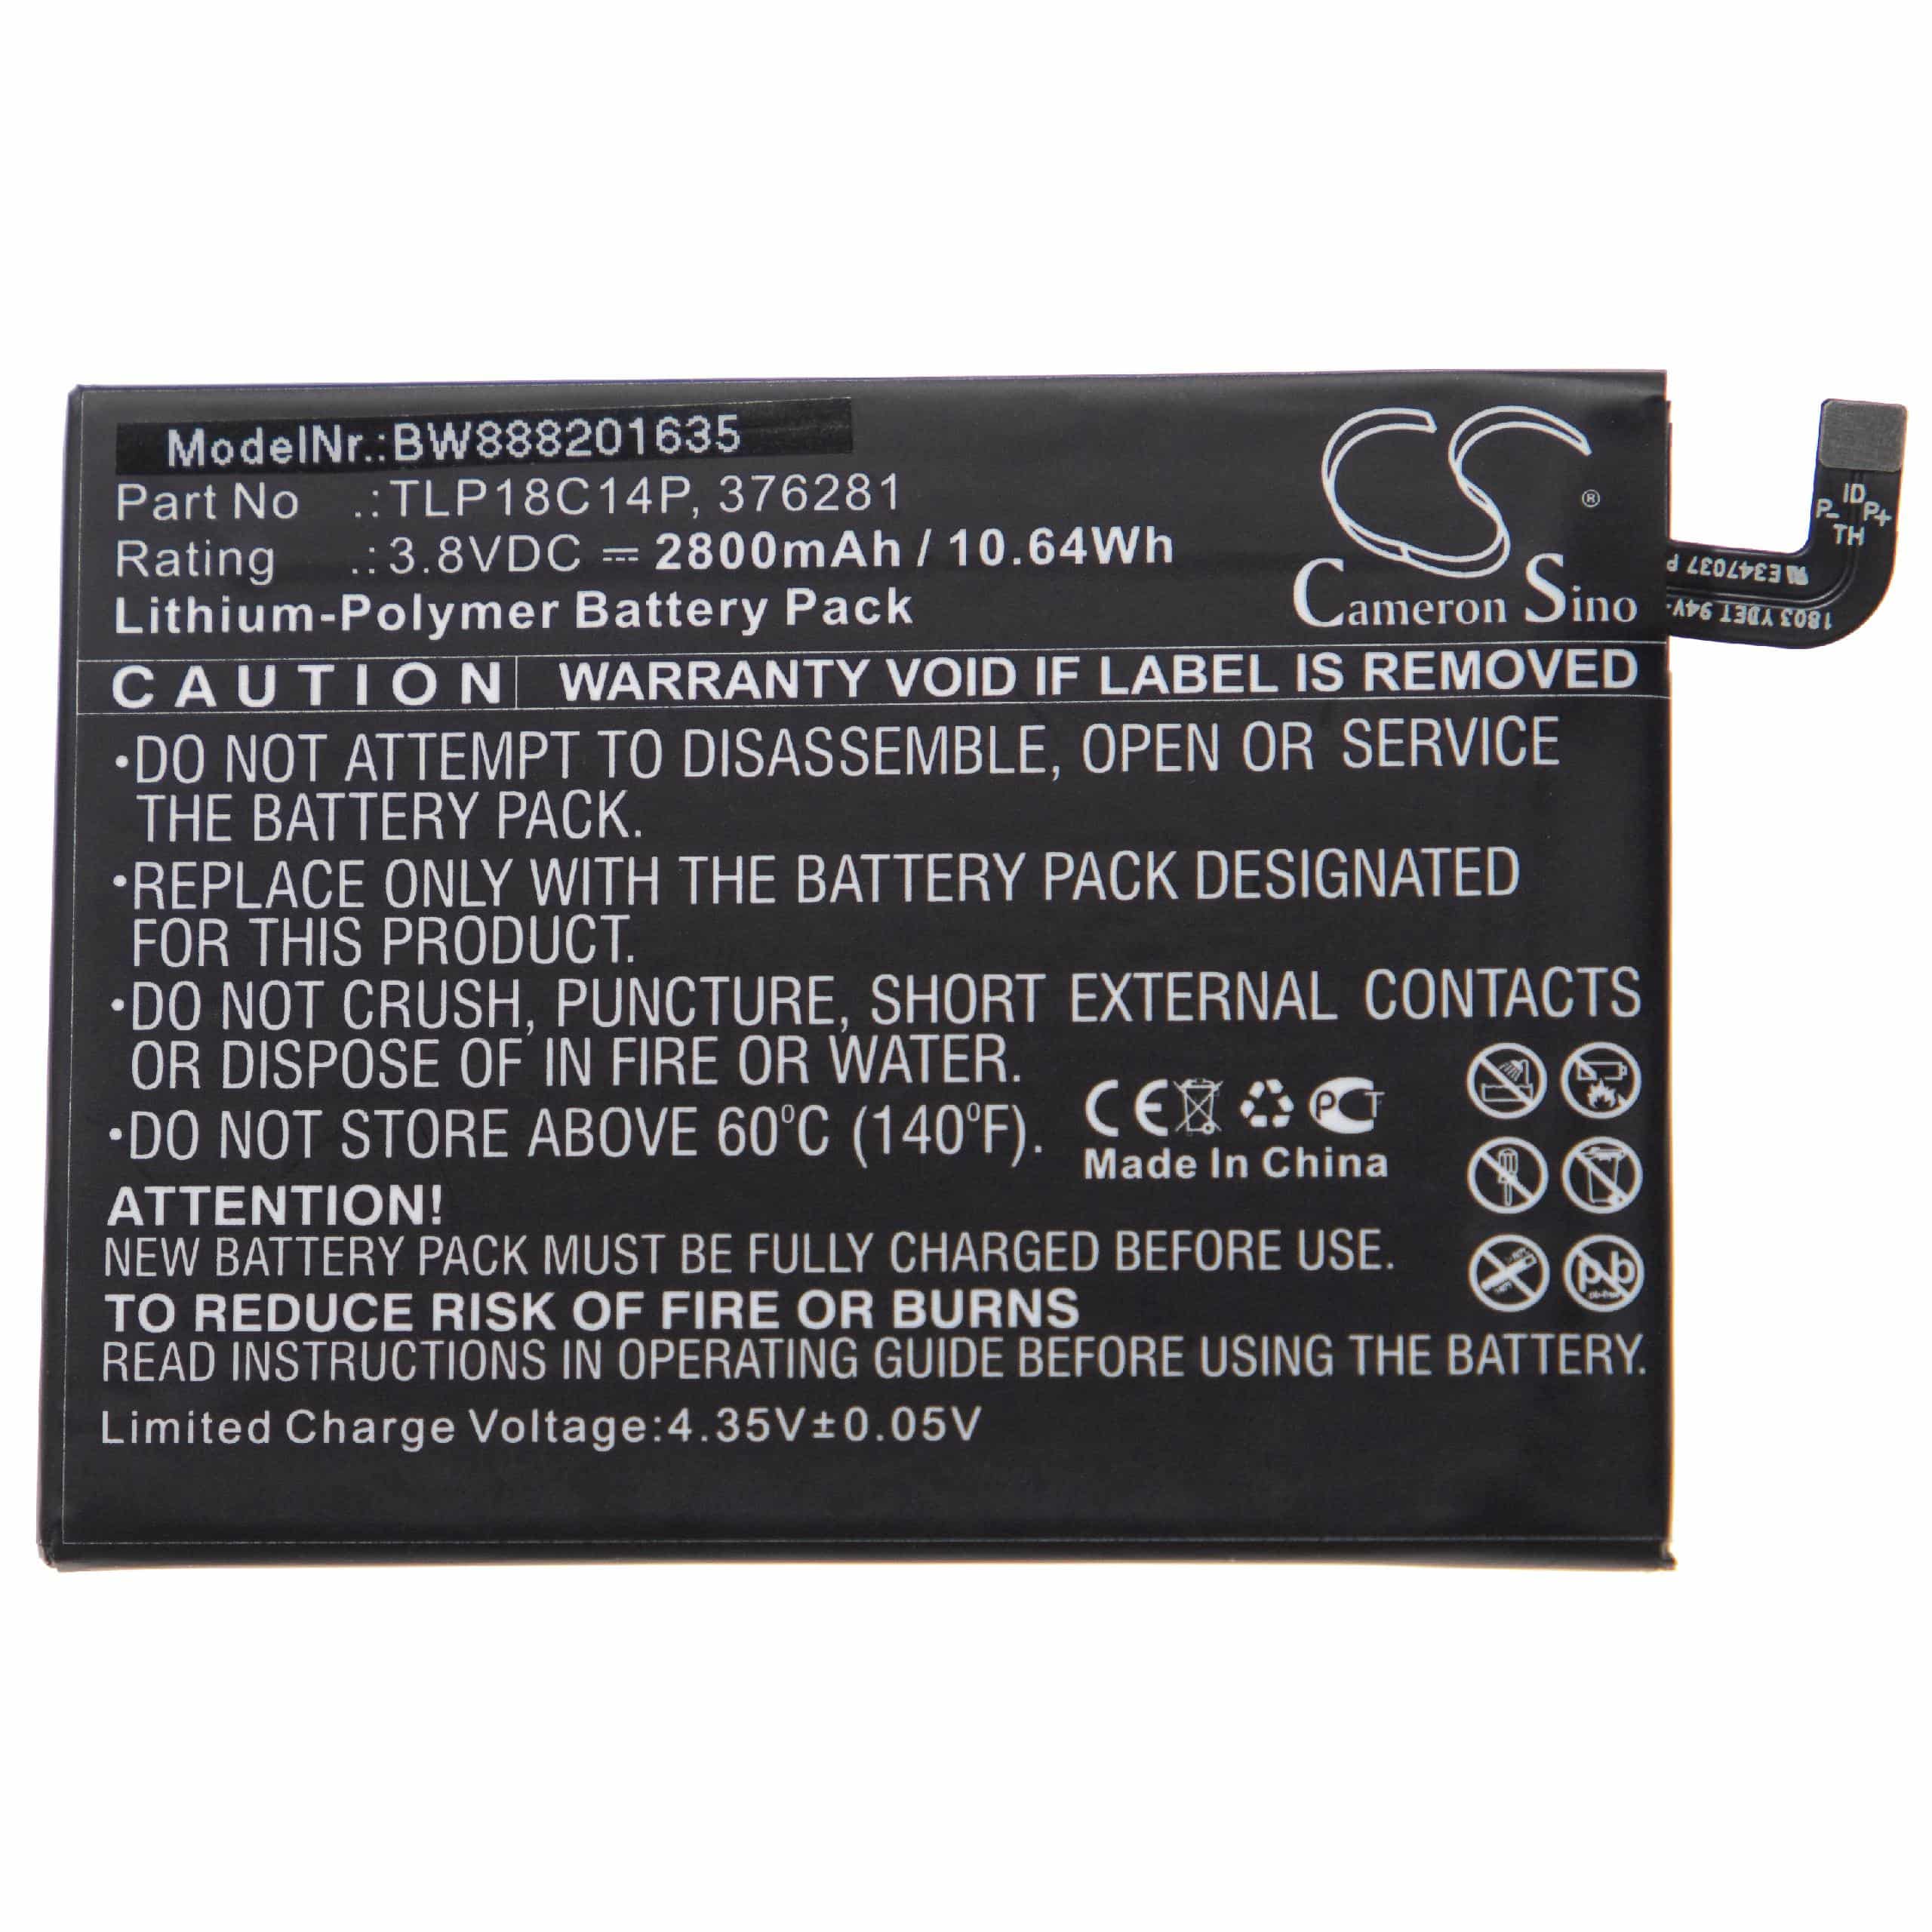 Batterie remplace Wiko 376281, TLP18C14P pour téléphone portable - 2800mAh, 3,8V, Li-polymère